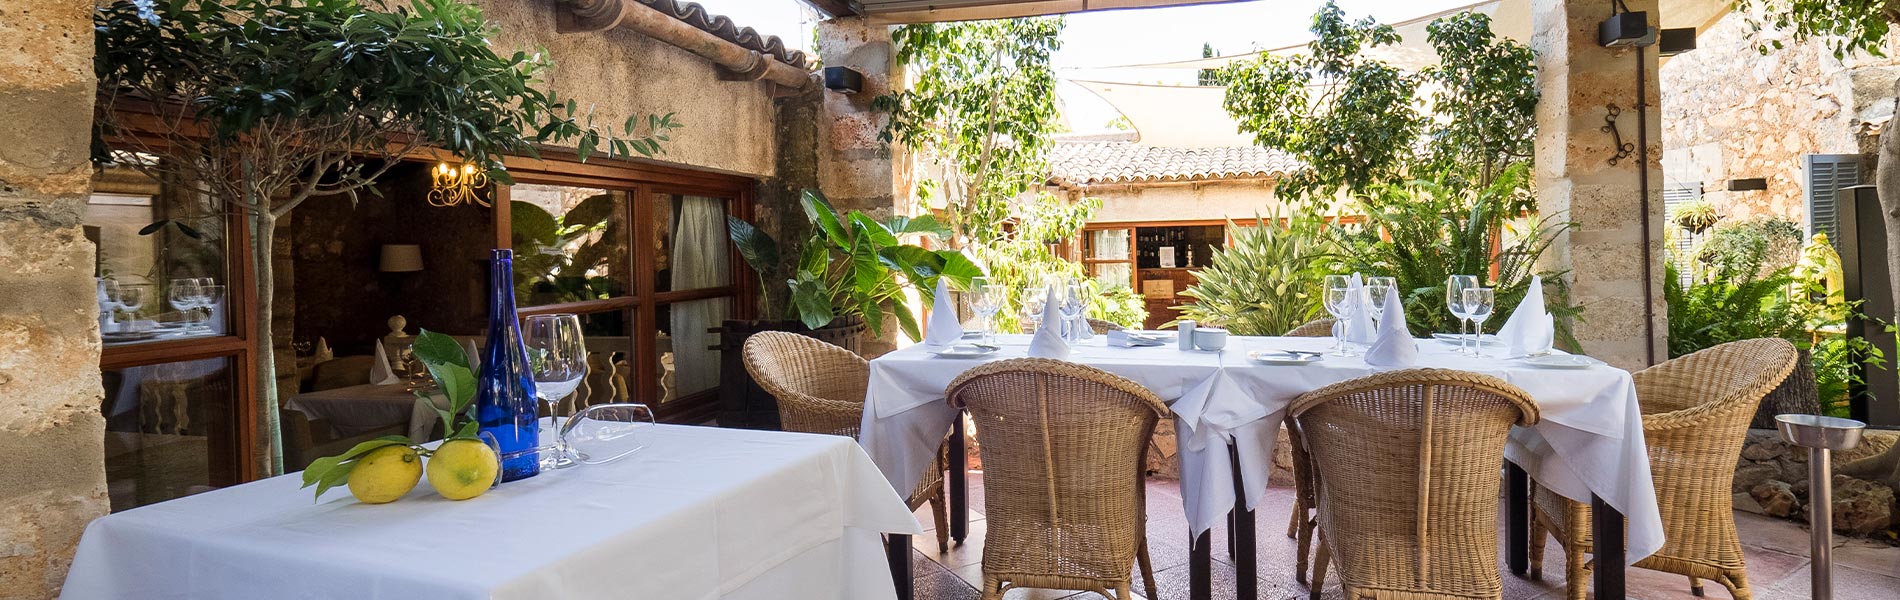 Gastronomía Residencia Restaurant Son Floriana Cala Bona, Mallorca